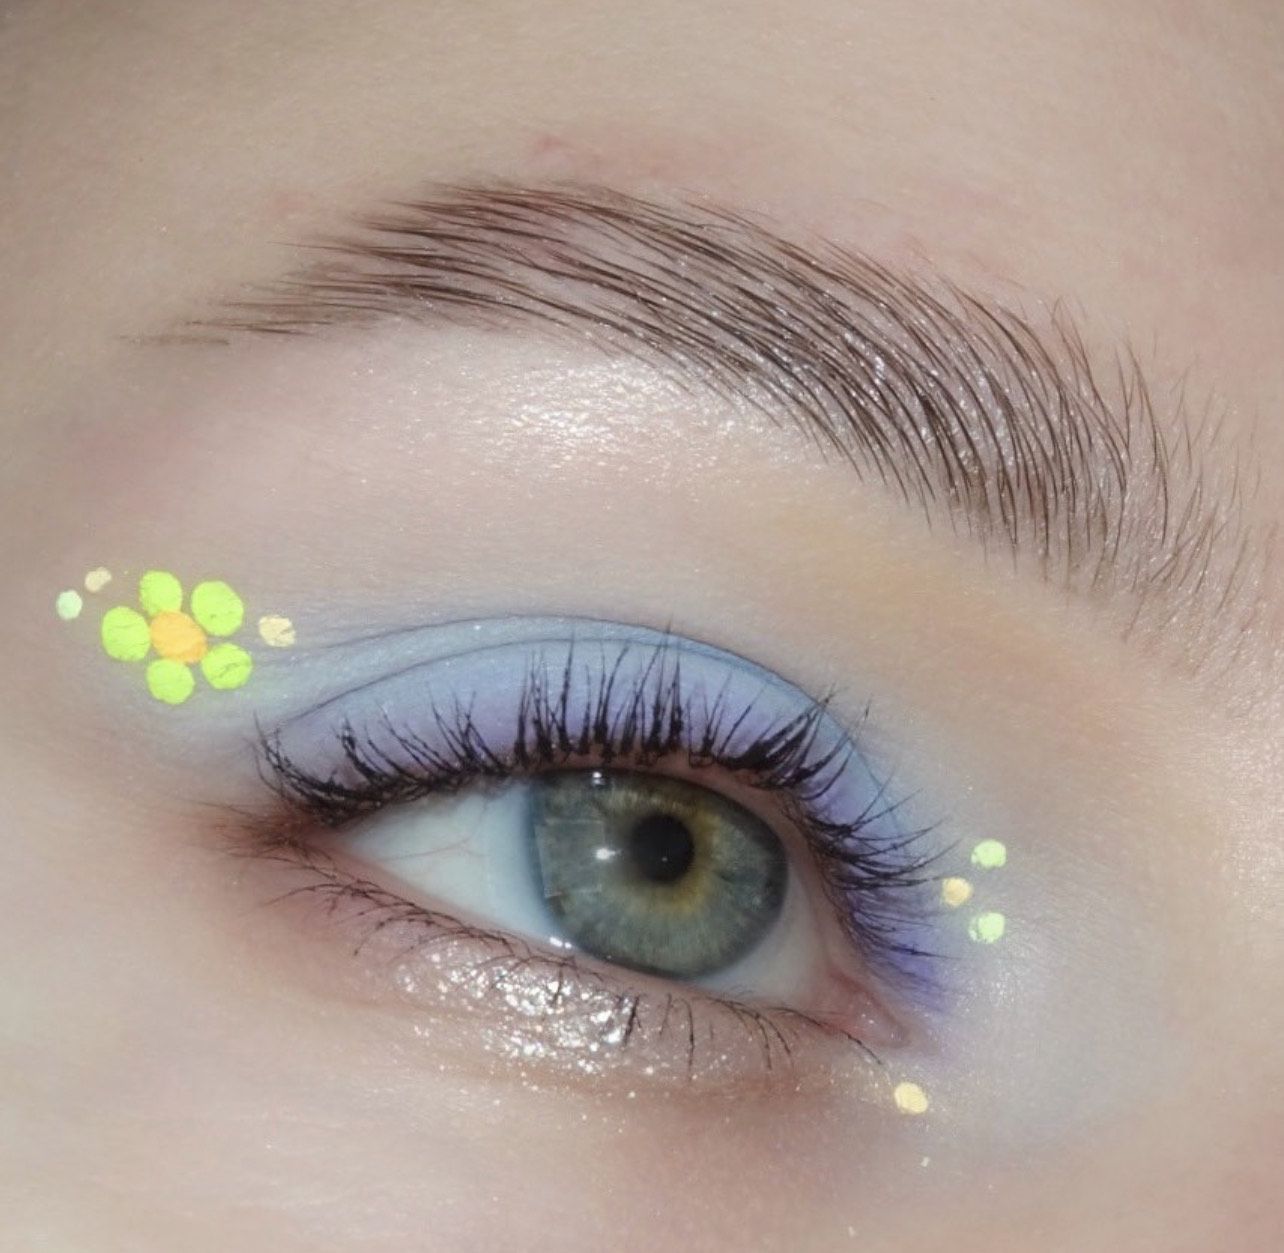 Os olhos azuis são pintados com sombras de pálpebra azul com um delineador de cor Barvinka e detalhes florais neono-amarelos